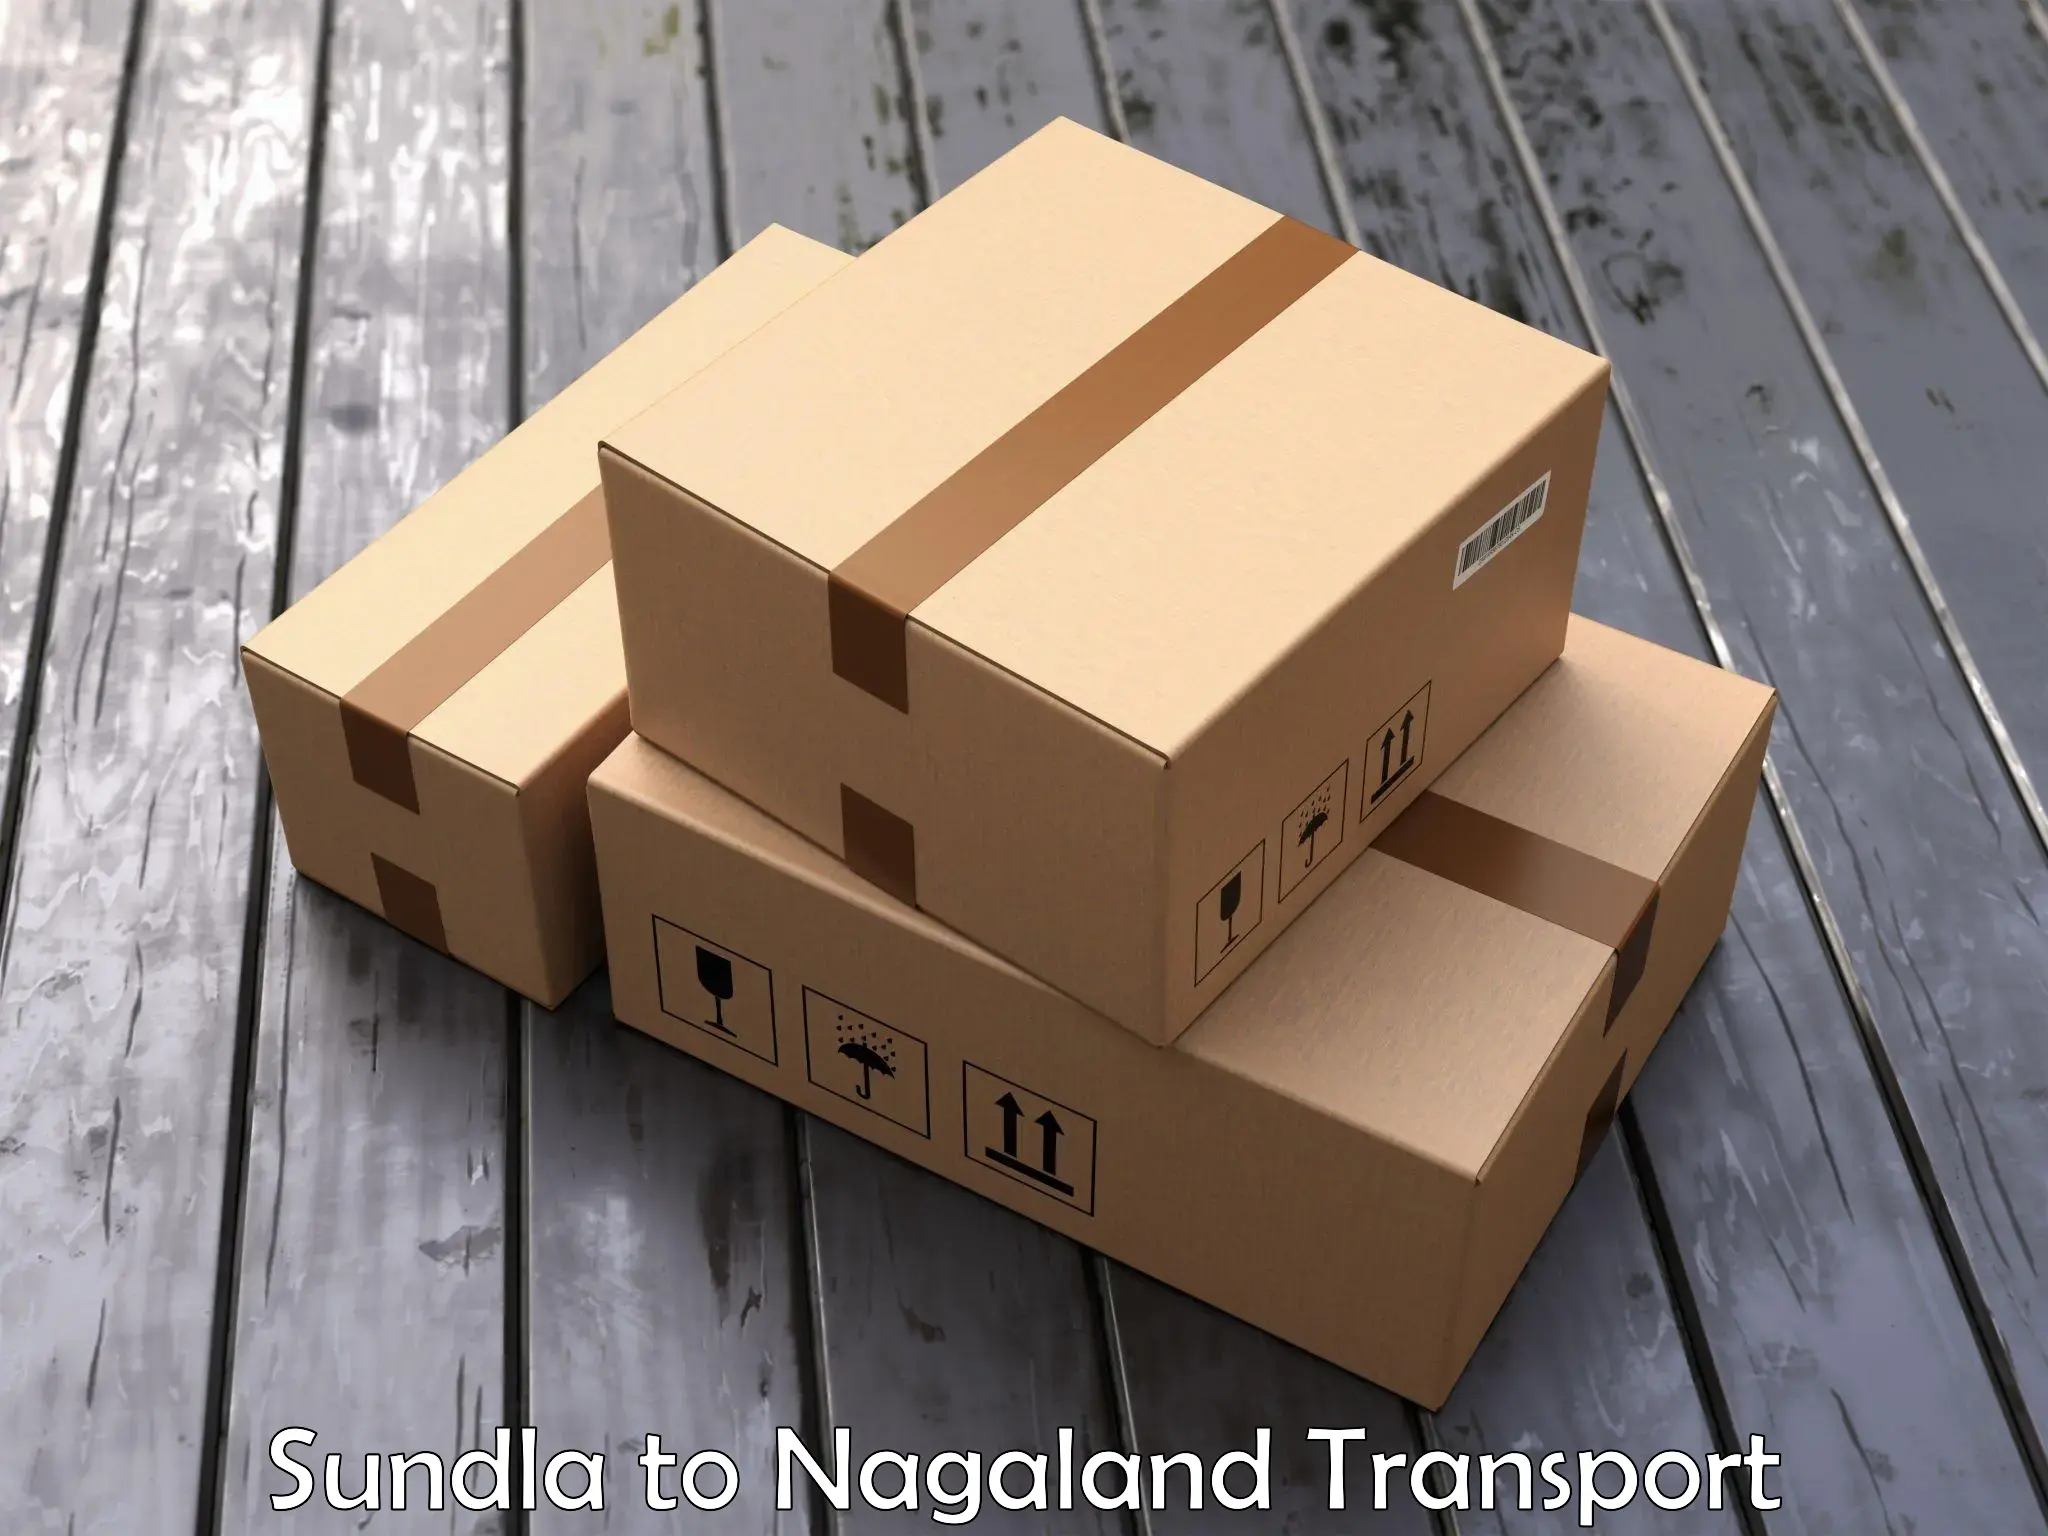 Online transport service Sundla to NIT Nagaland